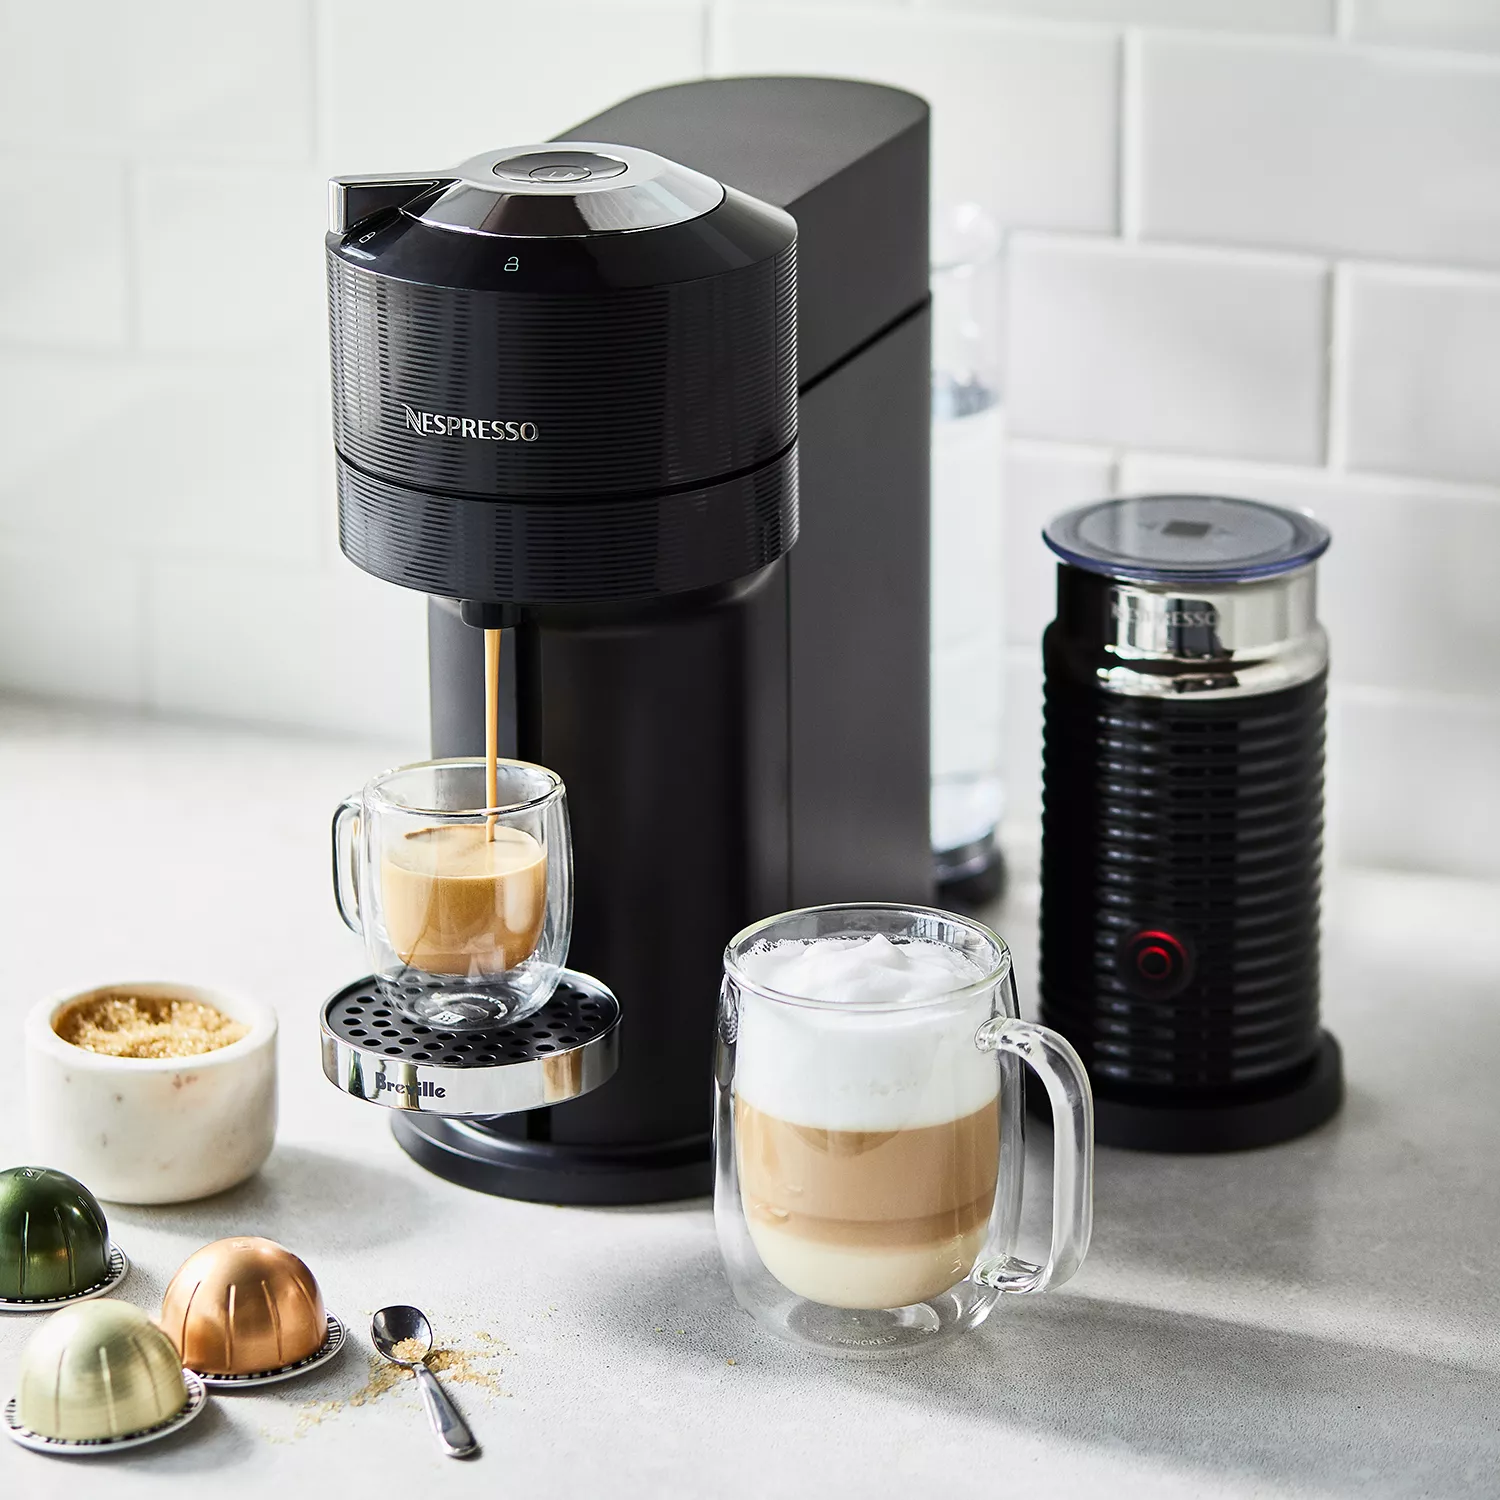 Nespresso Vertuo Next Premium Coffee and Espresso Maker in Gray